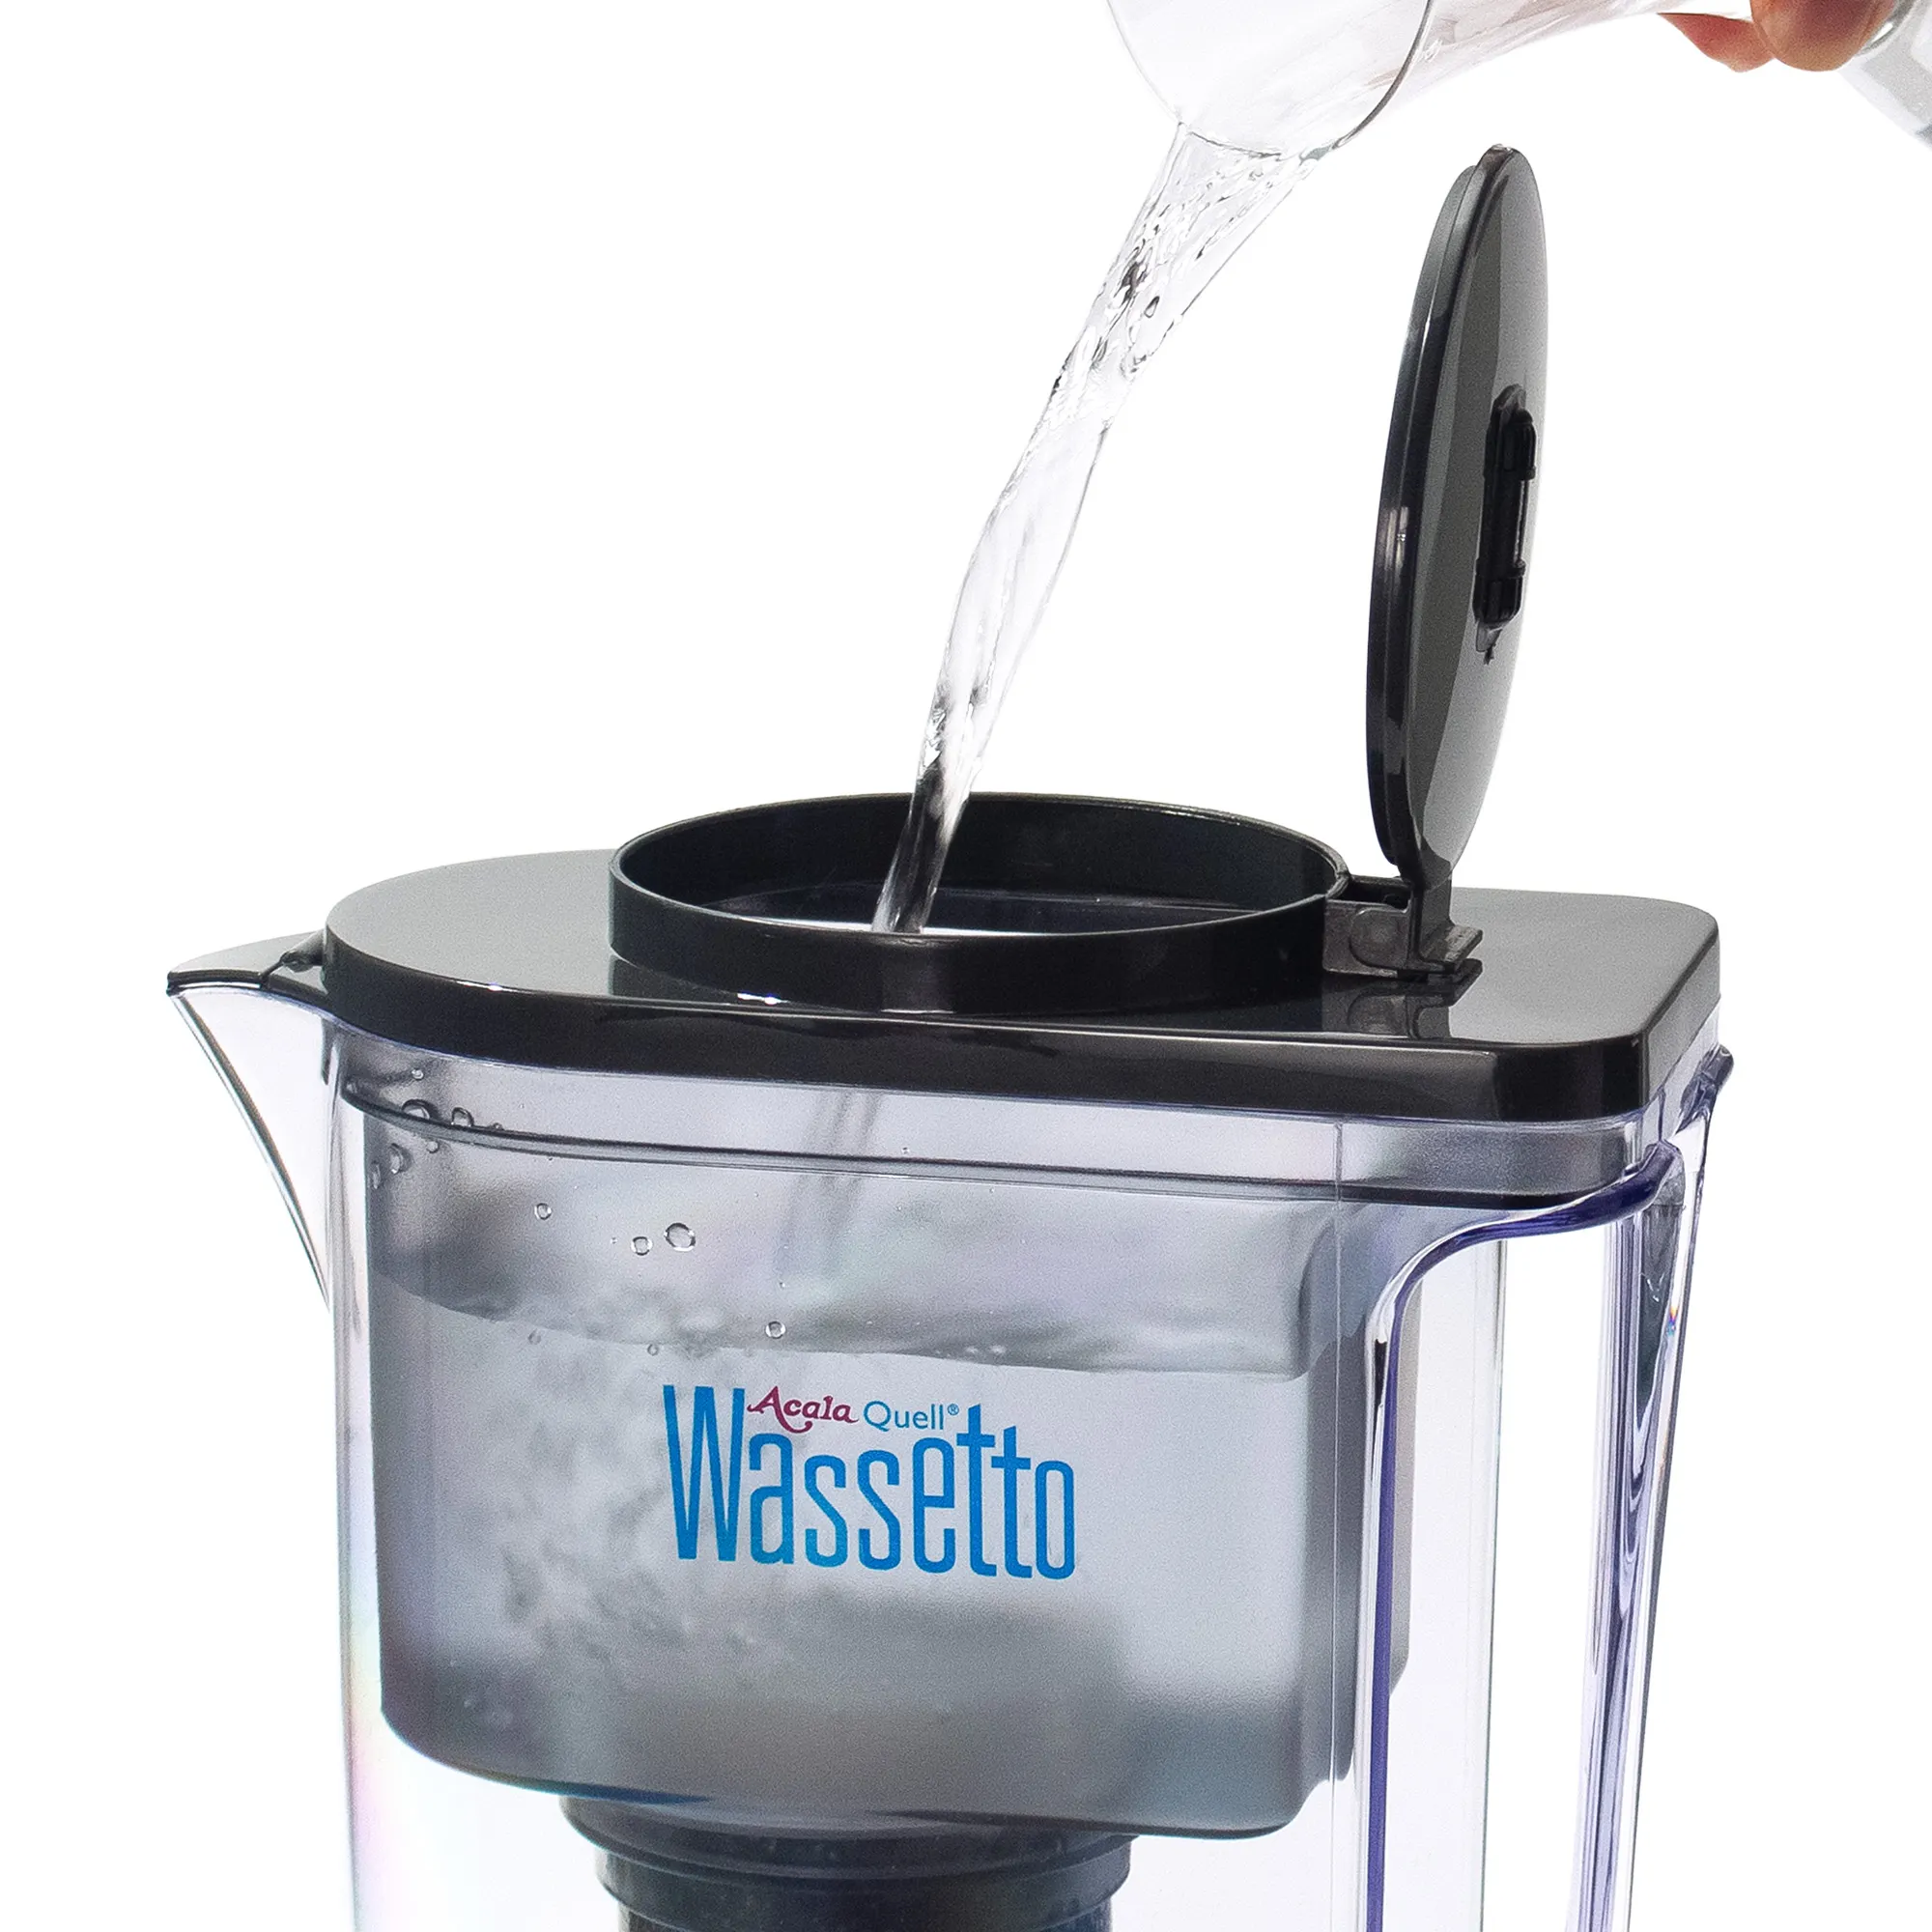 Kannenfilter Wassetto vor weißem Hintergrund. Durch die runde Klappe im Deckel wird der obere Tank mit Wasser befüllt